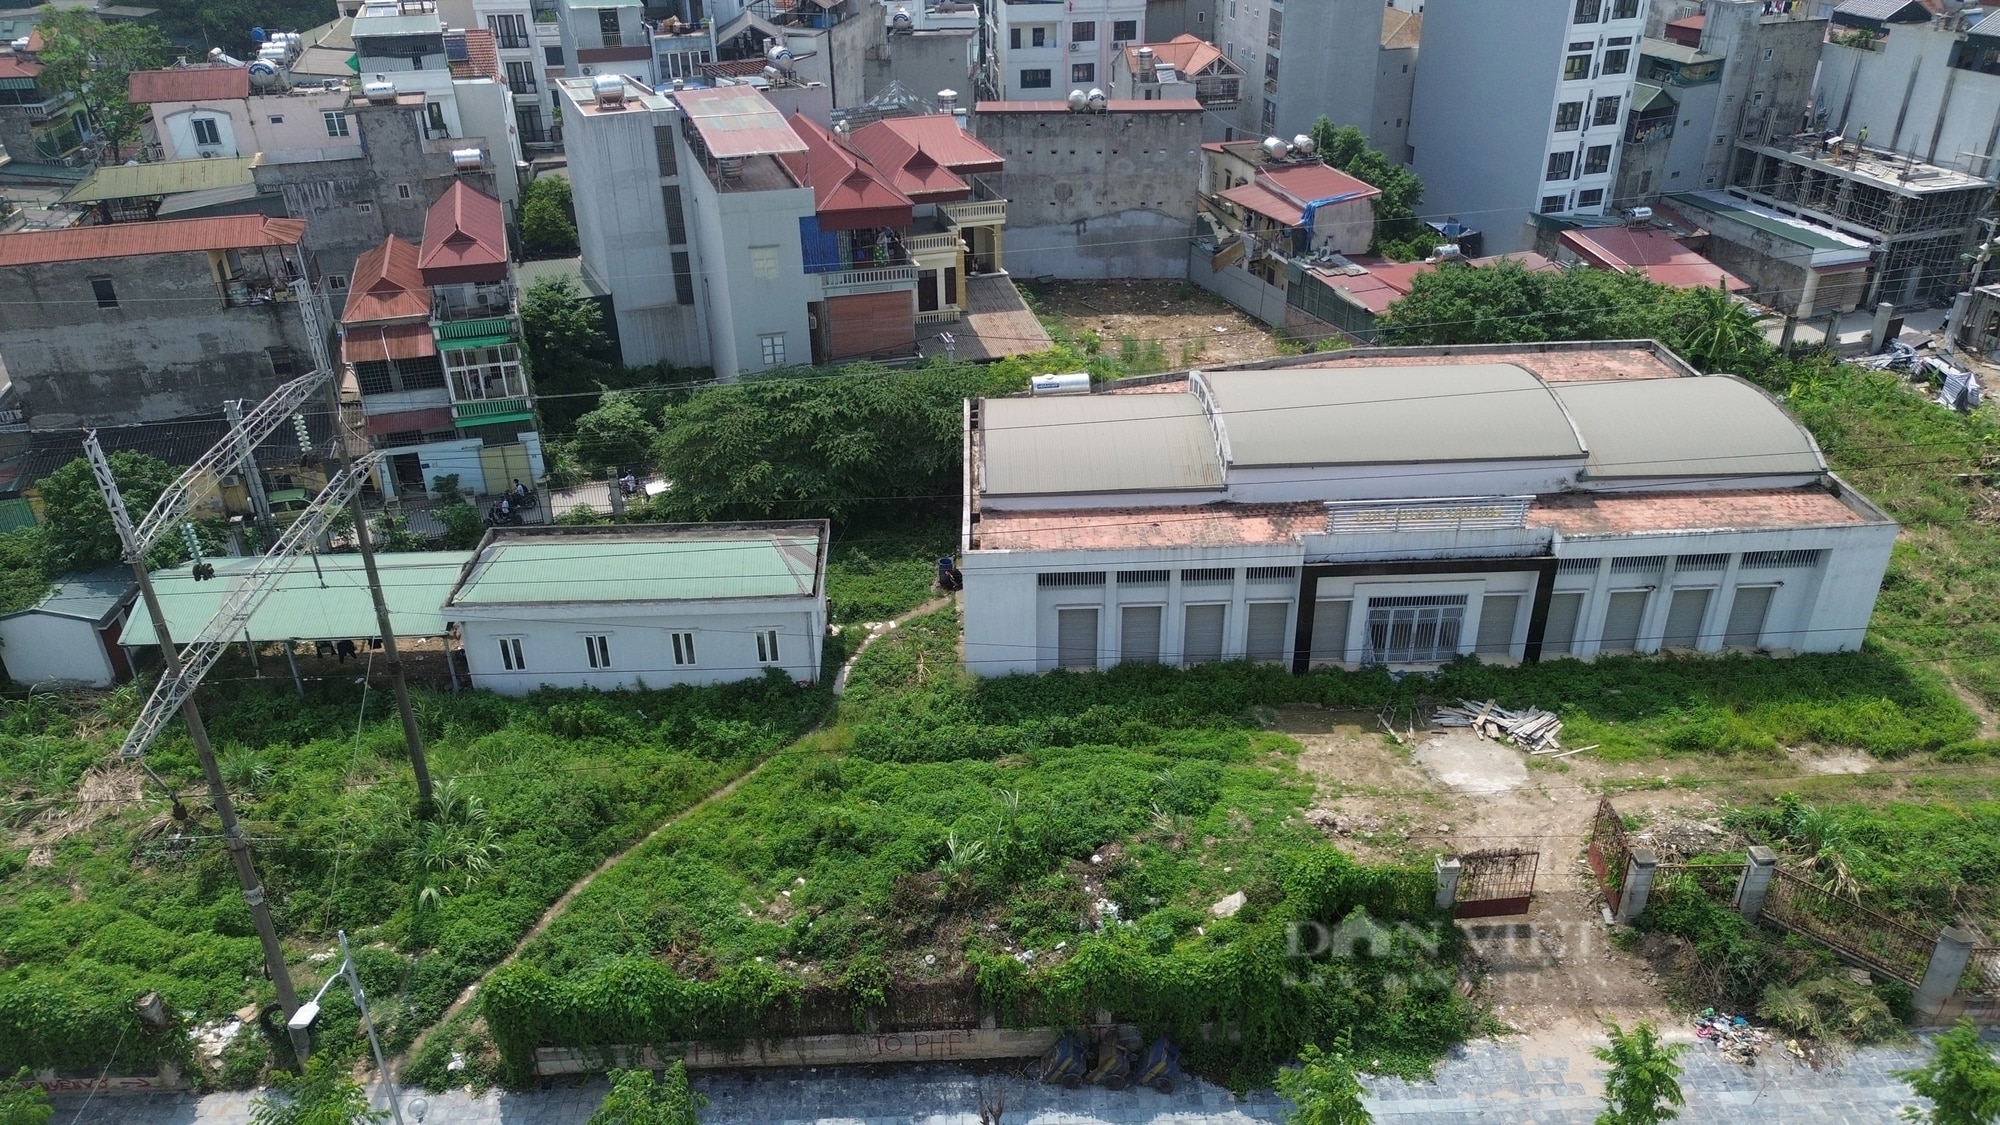 Bên trong chợ dân sinh ở Hà Nội bỏ hoang gần 10 năm, cỏ mọc um tùm quá đầu người- Ảnh 2.